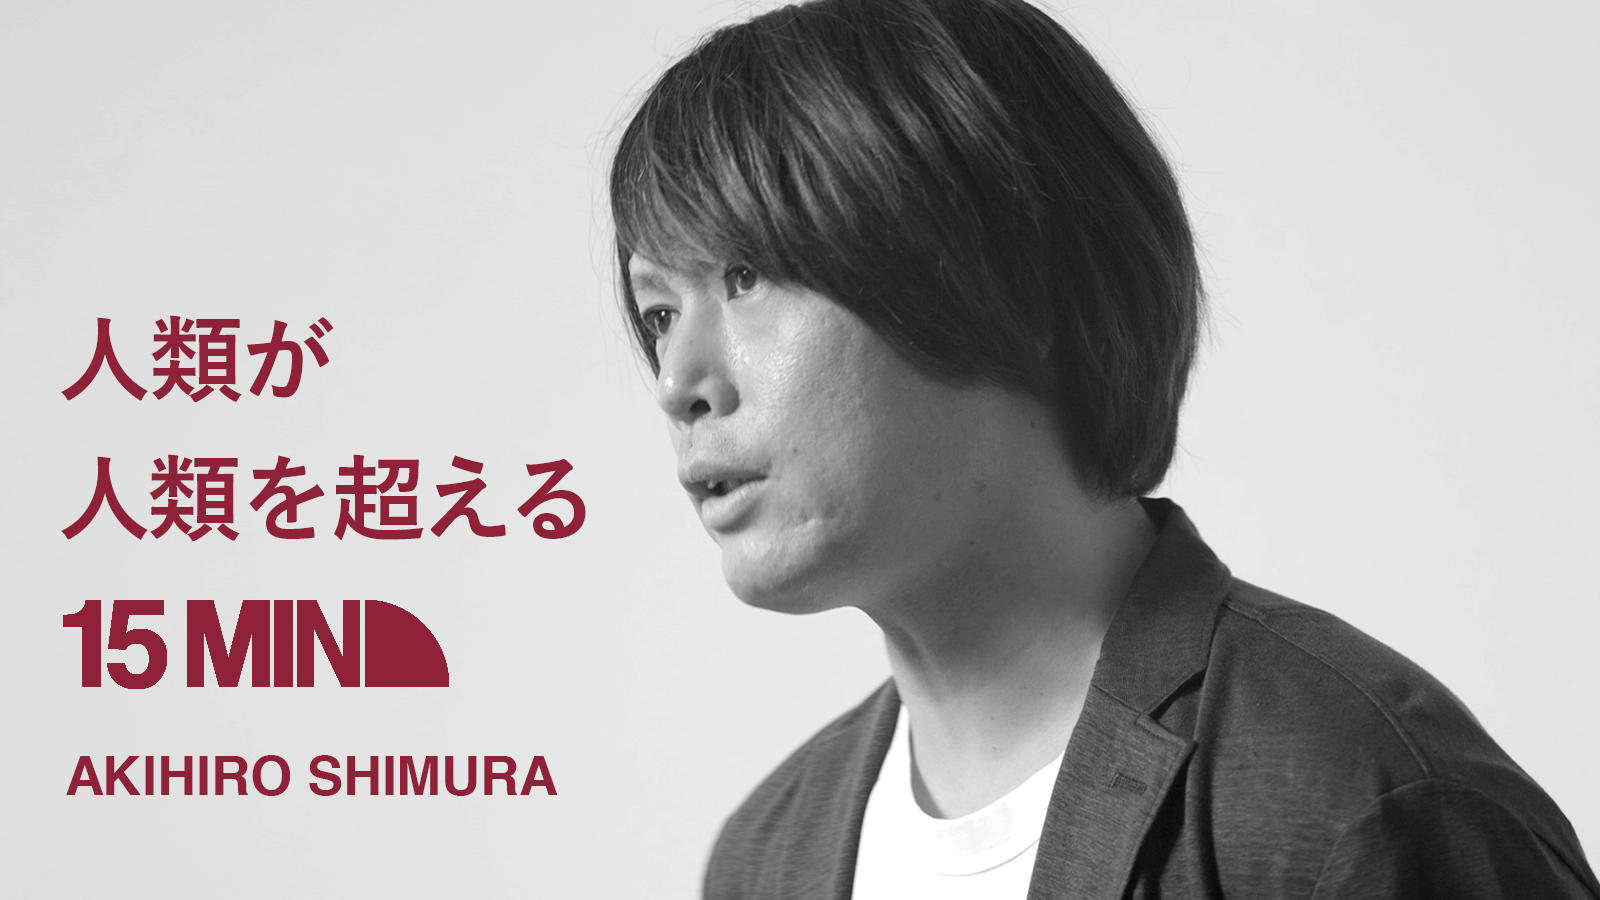 人類が人類を超える 15MIN AKIHIRO SHIMURA